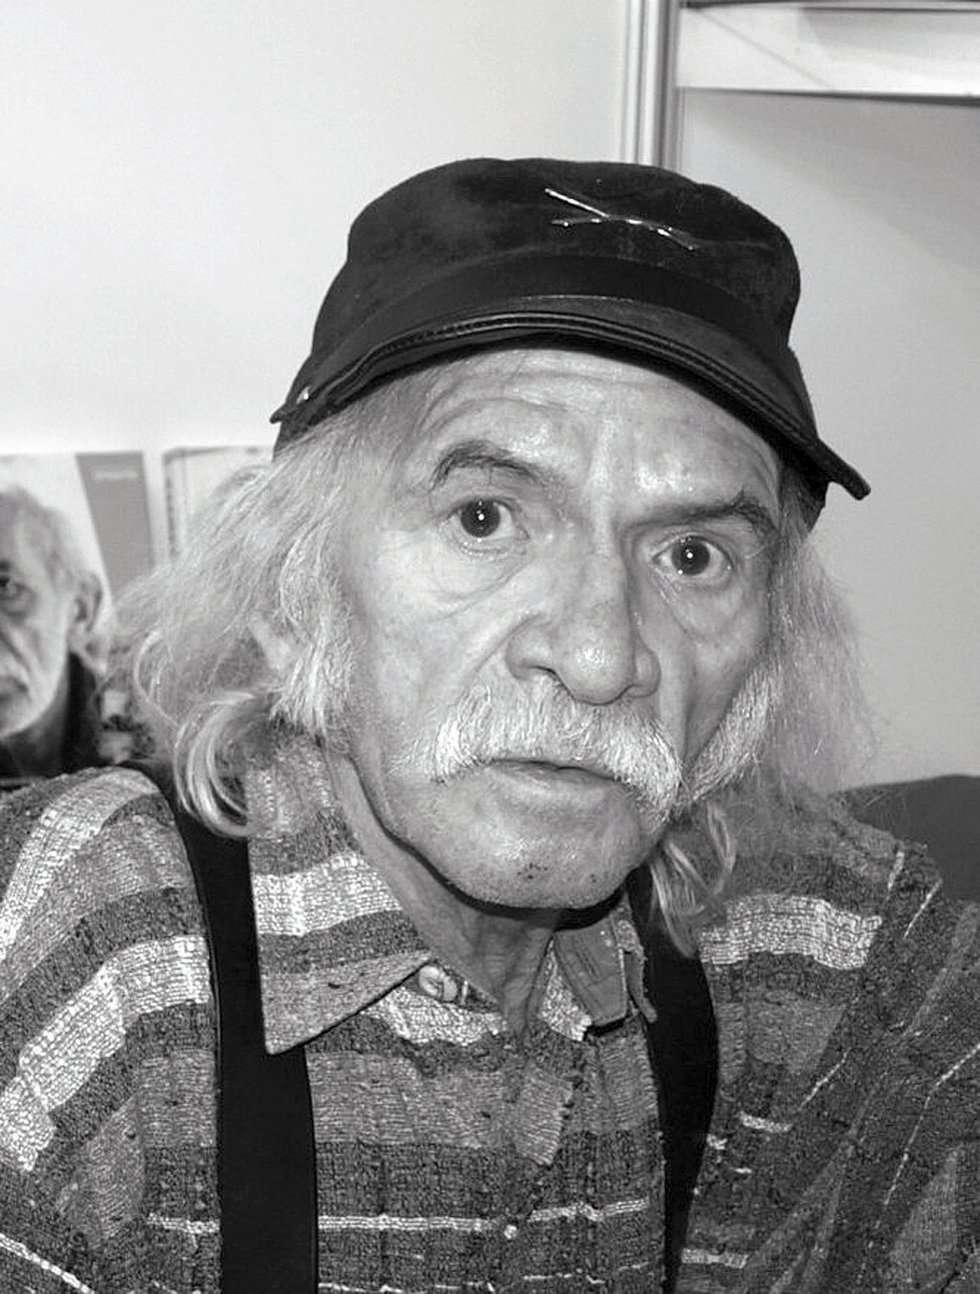  <p><strong>2016 - grudzień</strong></p>
<p><strong>Bohdan Smoleń</strong></p>
<p>Aktor, piosenkarz komediowy i artysta kabaretowy. Miał 69 lat. Był członkiem słynnego w okresie PRL kabaretu &bdquo;Tey&rdquo; z Poznania i założycielem &bdquo;Fundacji Stworzenia Pana Smolenia&rdquo;. Przez 5 lat prowadził polonijny program Ludzie listy piszą w TVP Polonia. Nagrał także &bdquo;Smoleniowe bajanie, czyli całkiem dorosłe bajki&rdquo; &ndash; zbi&oacute;r przerobionych satyrycznie bajek. Jako aktor występował m.in. jako Listonosz Edzio w serialu &bdquo;Świat według Kiepskich&rdquo;.</p>